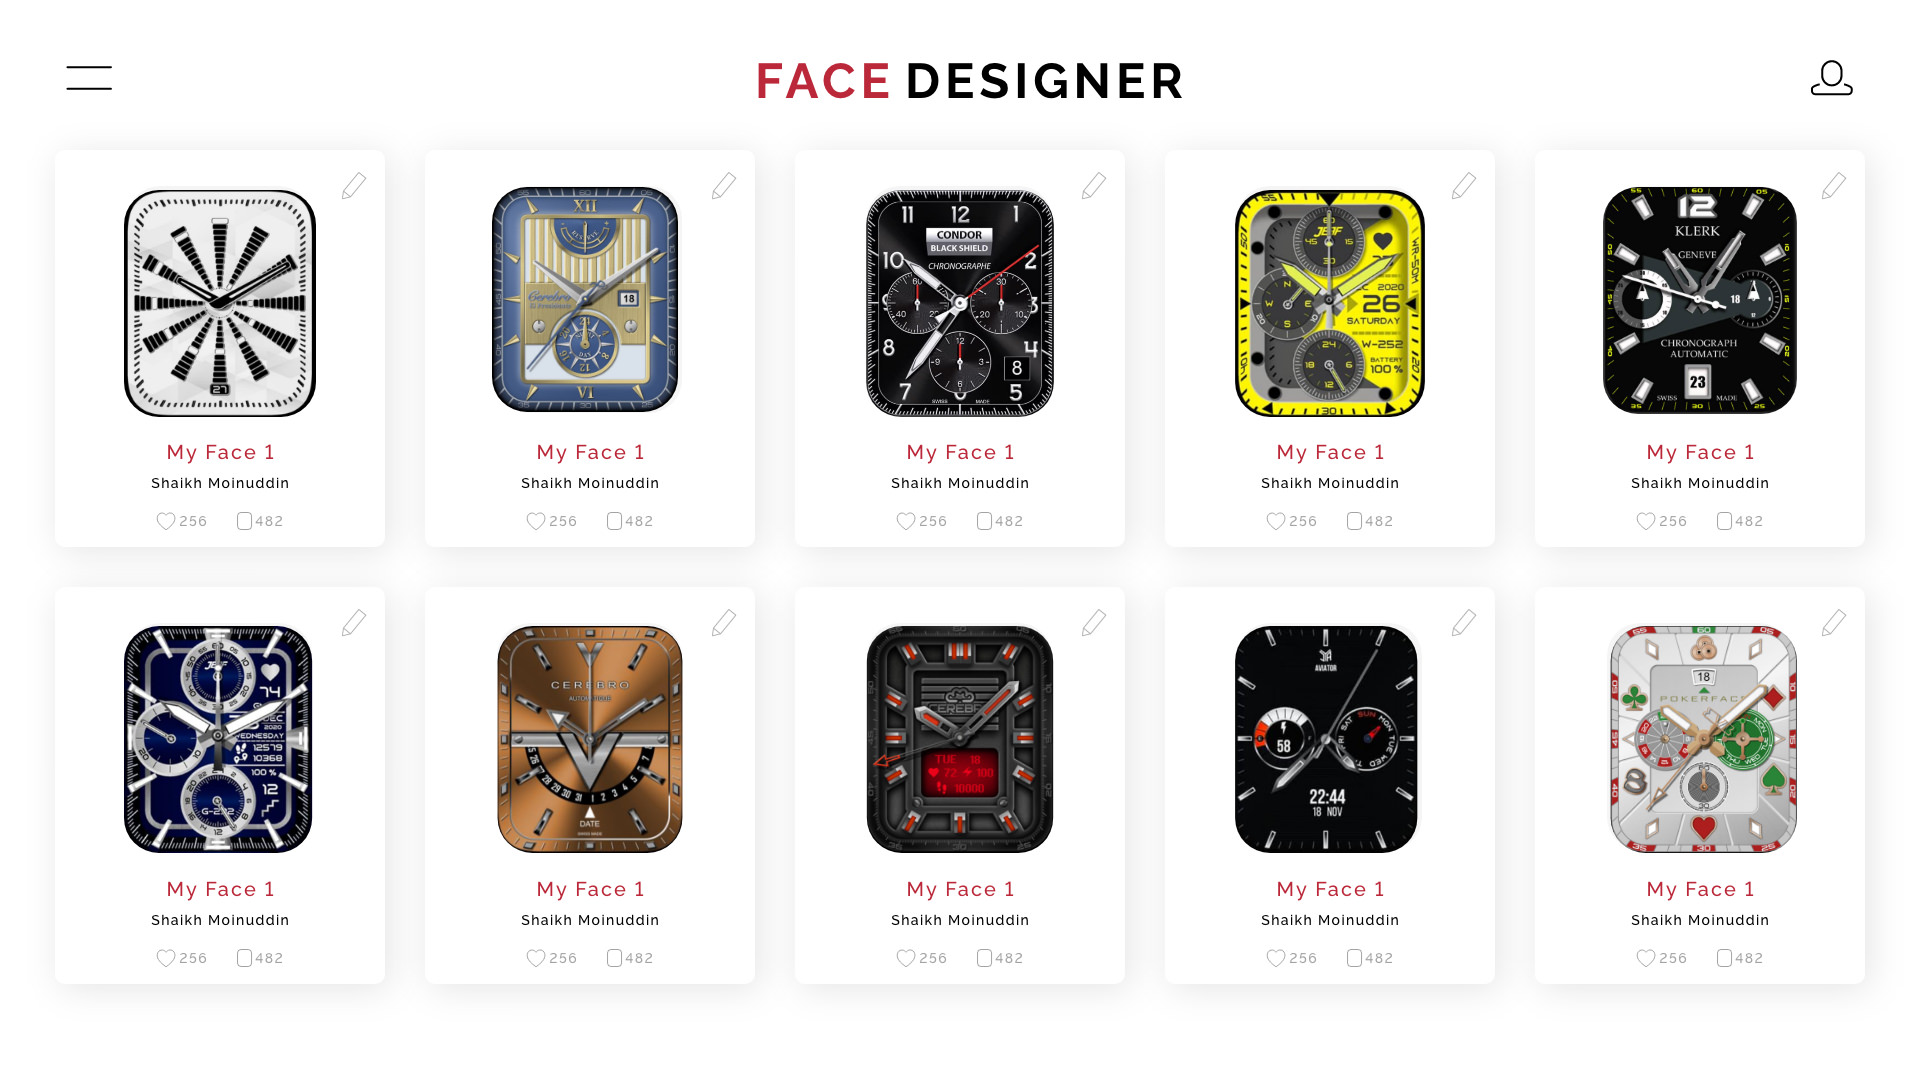 Apple Watch Faces - Apple Face Designer